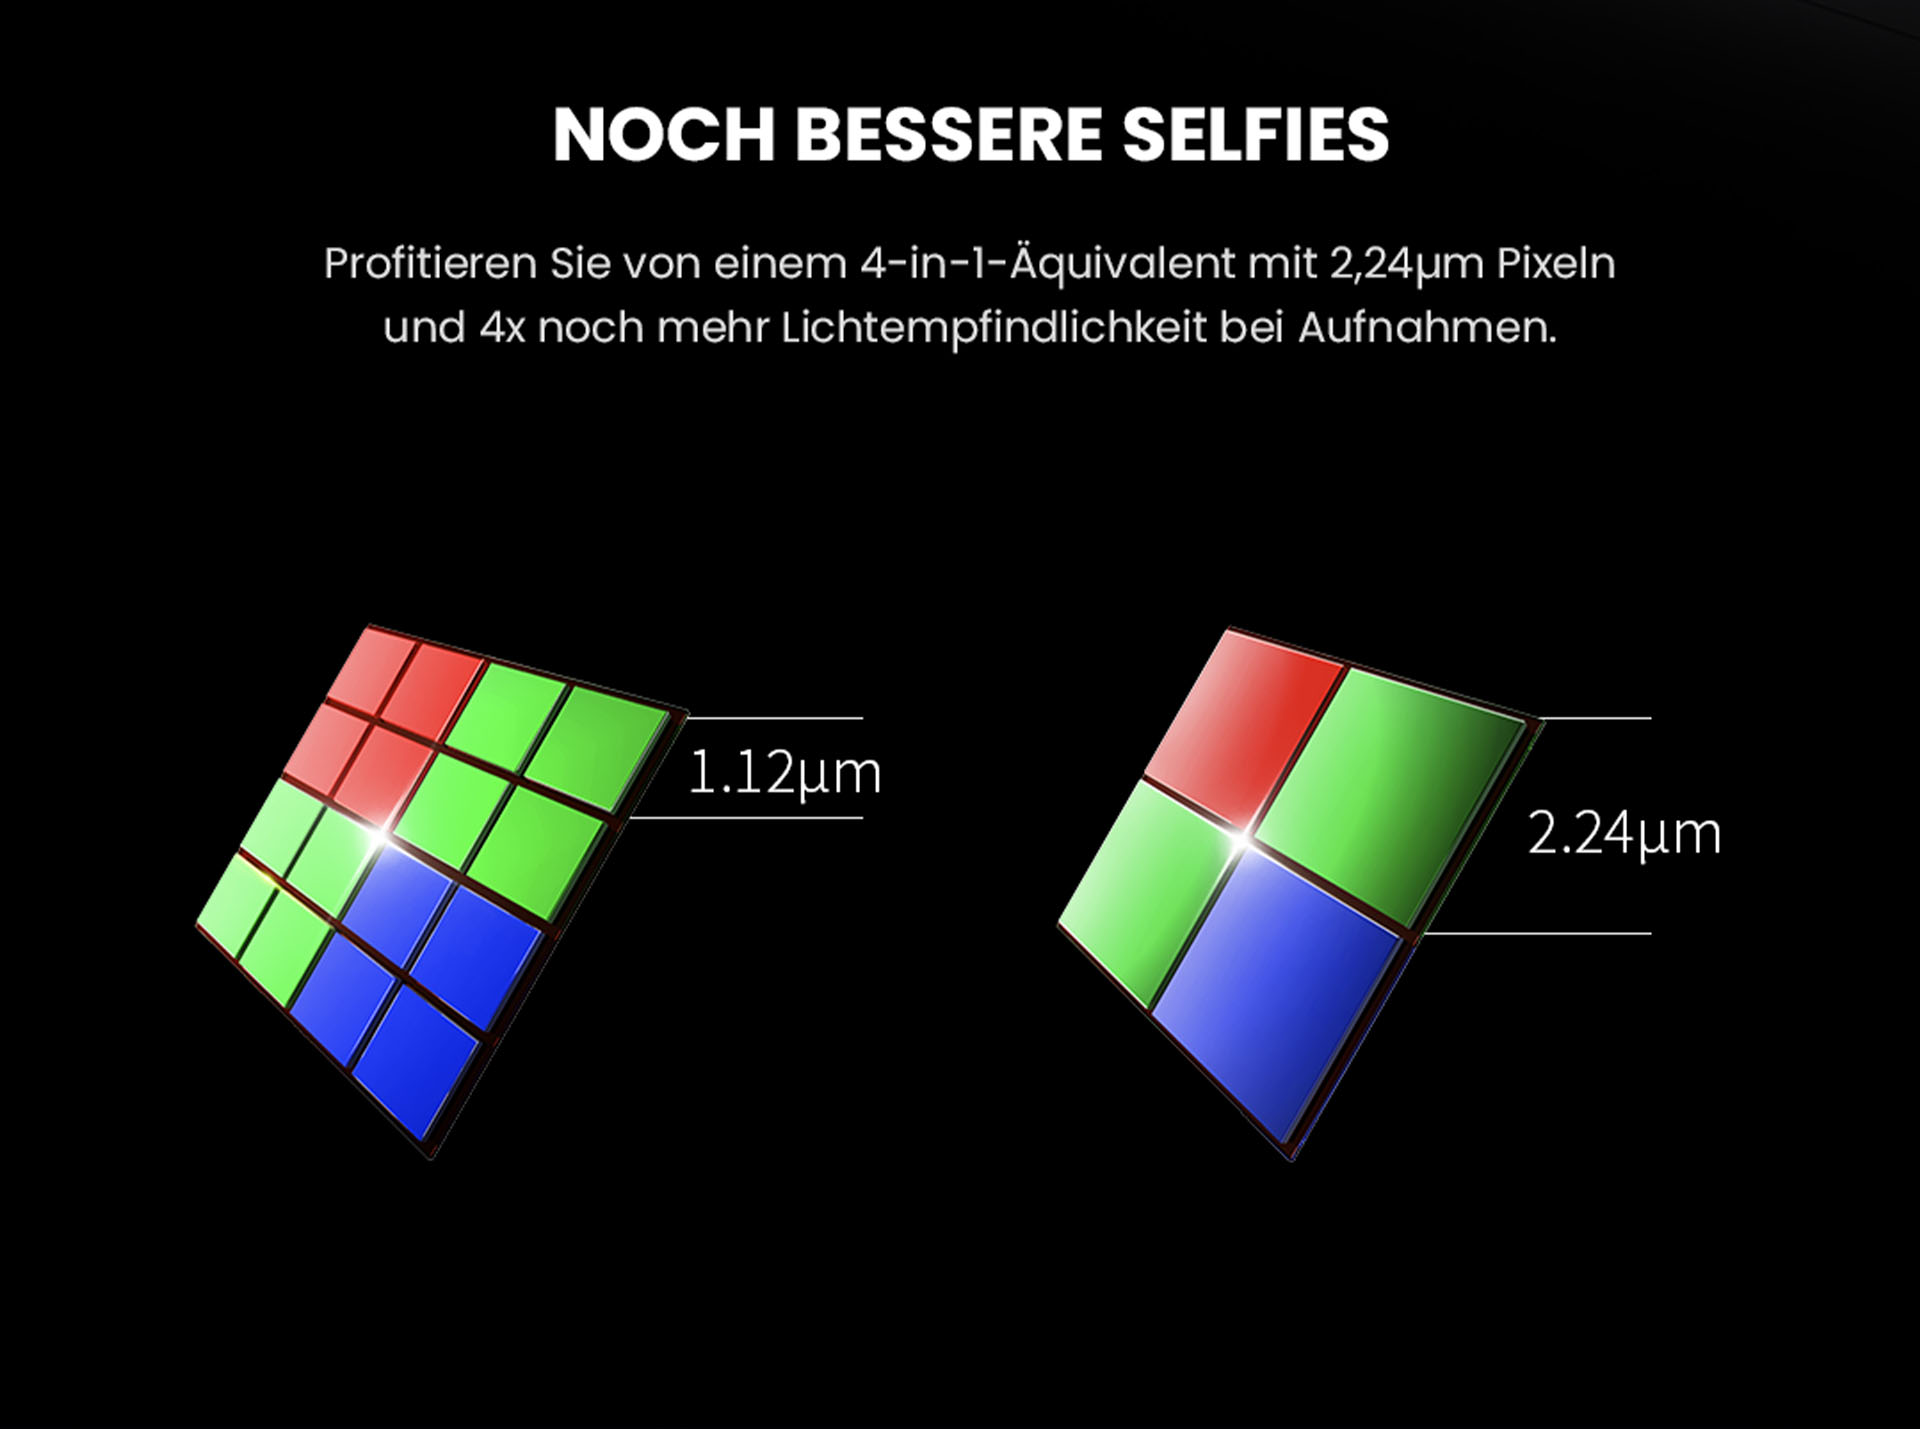 Noch bessere Selfies mit dem ZTE Axon 30 - Profitieren Sie von einem 4-in-1-Äquivalent mit 2,24um Pixeln und 4x noch mehr Lichtempfindlichkeit bei Aufnahmen